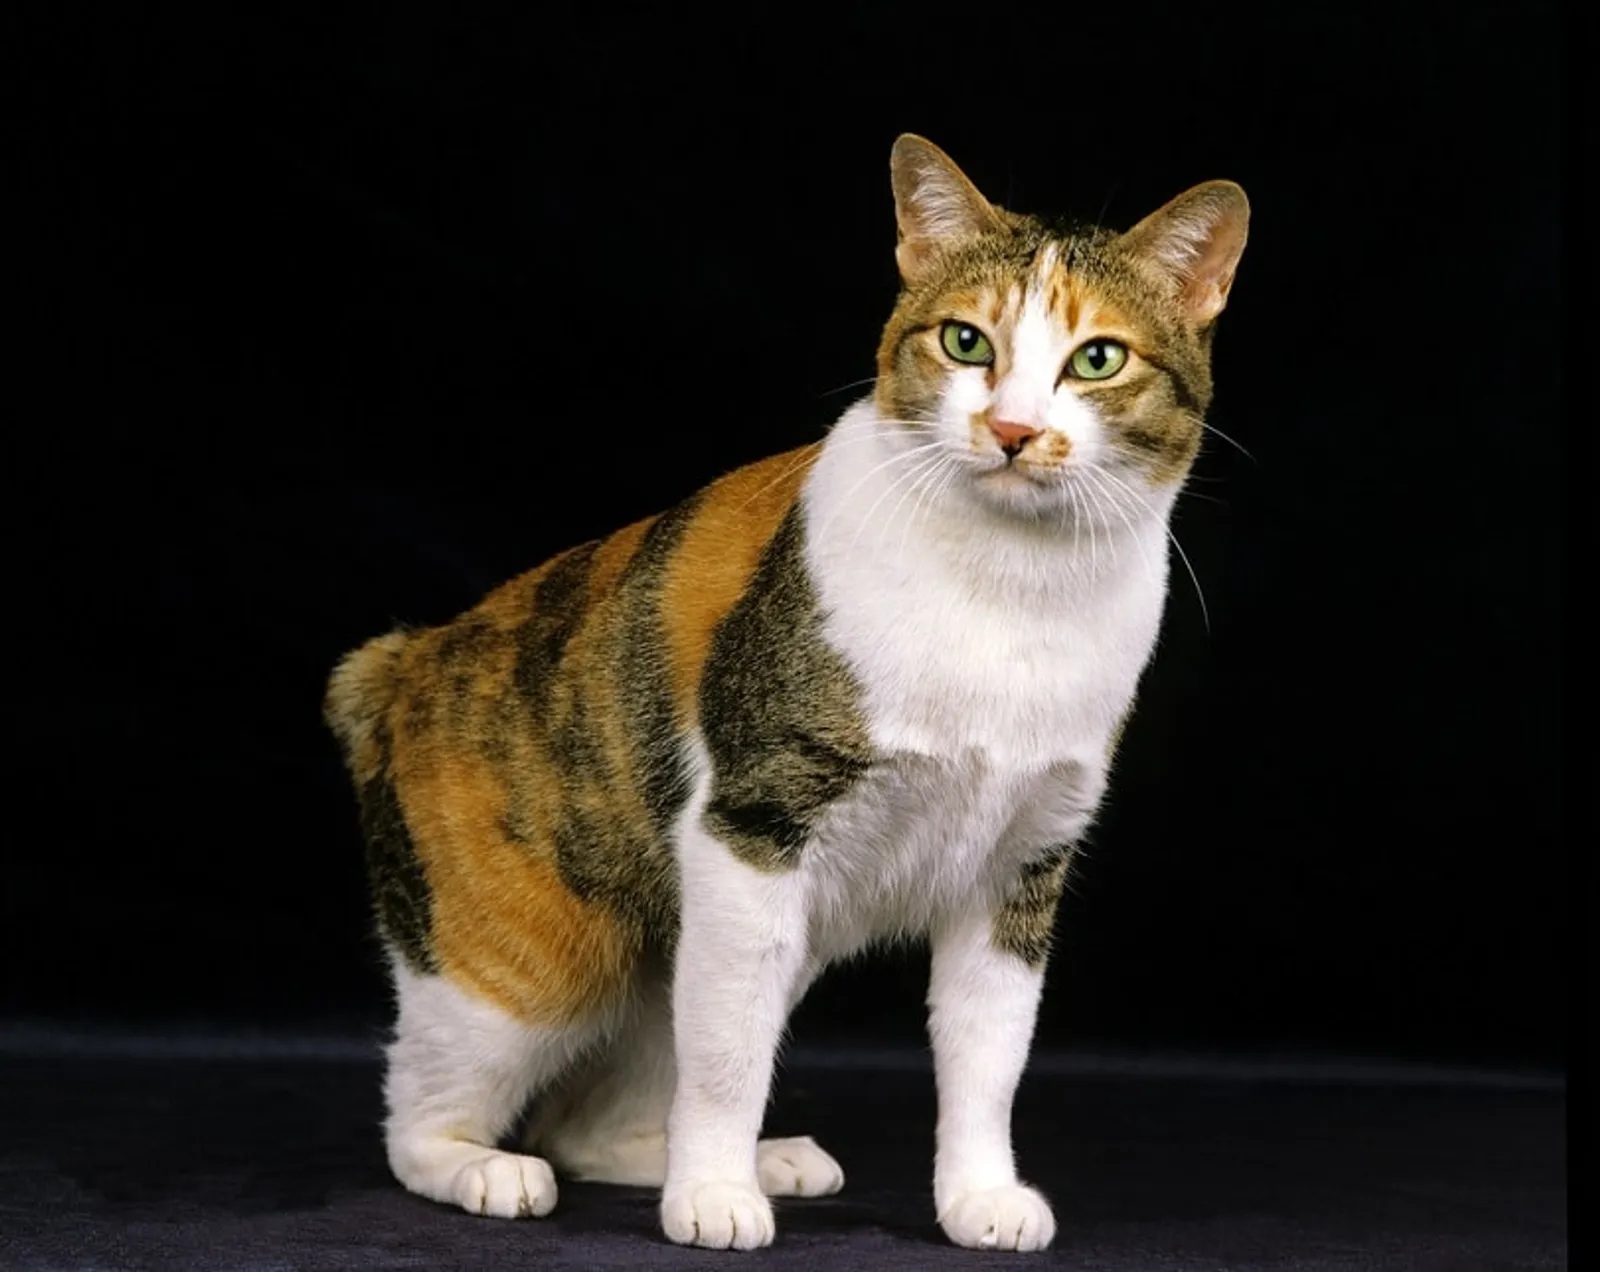 4 Fakta Kucing Corak Tiga Alias Calico Menurut Primbon Jawa, Menjadi Keberuntungan!